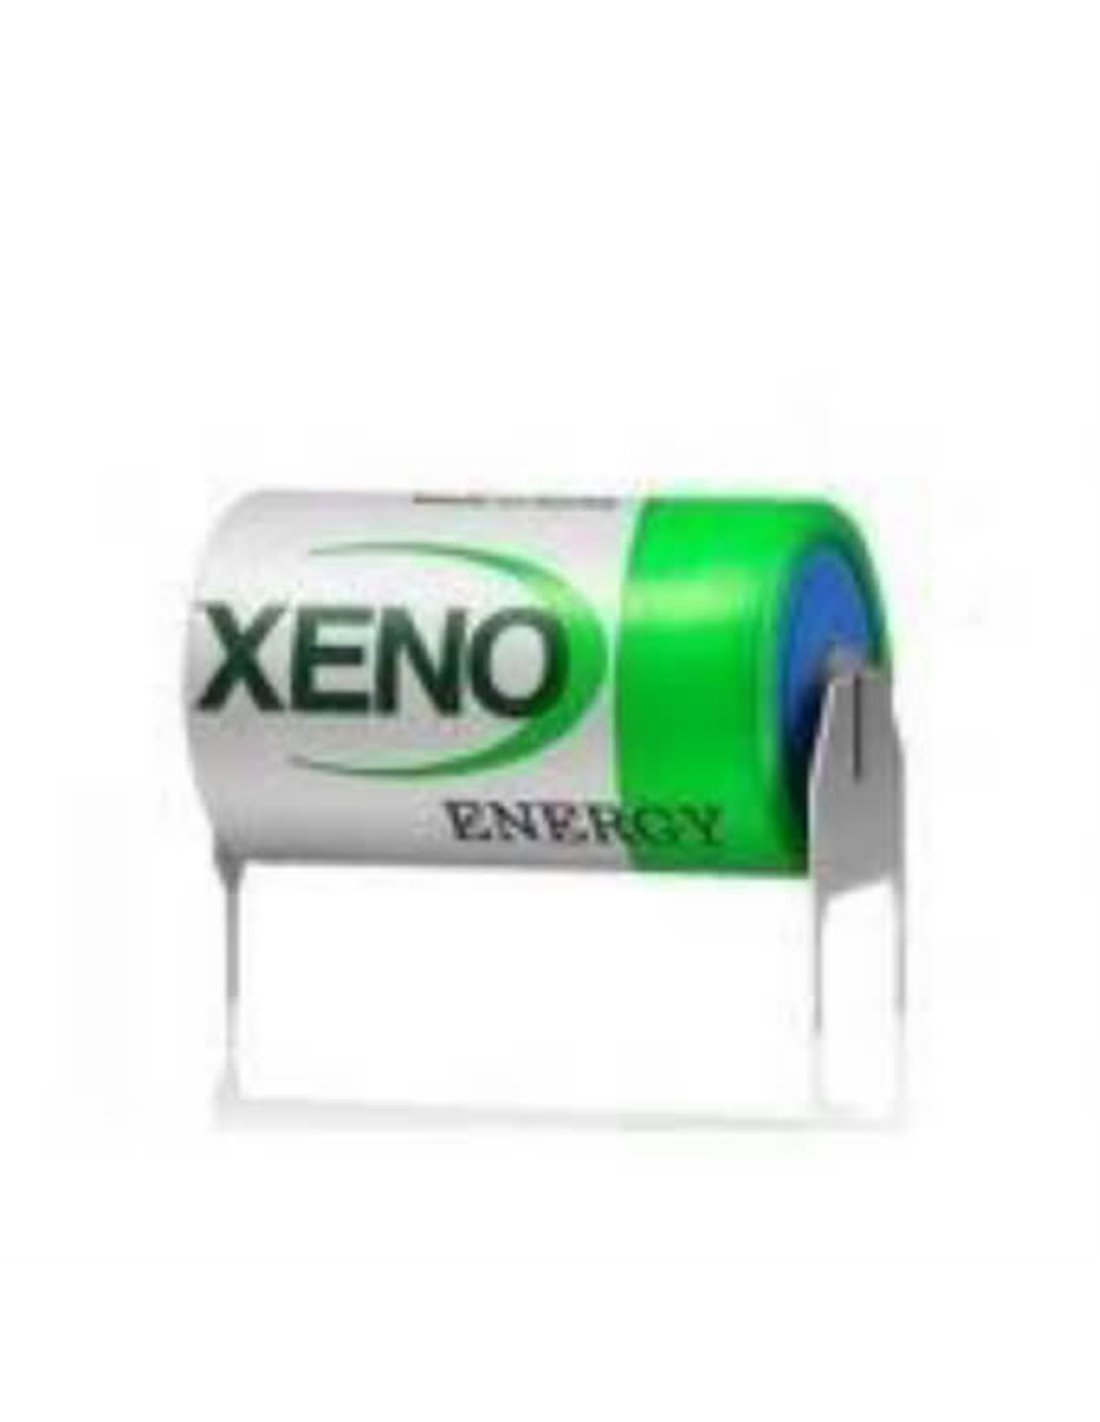 Xeno XL-055F Battery, 3.6V 1650mAh 2/3 AA Lithium Battery